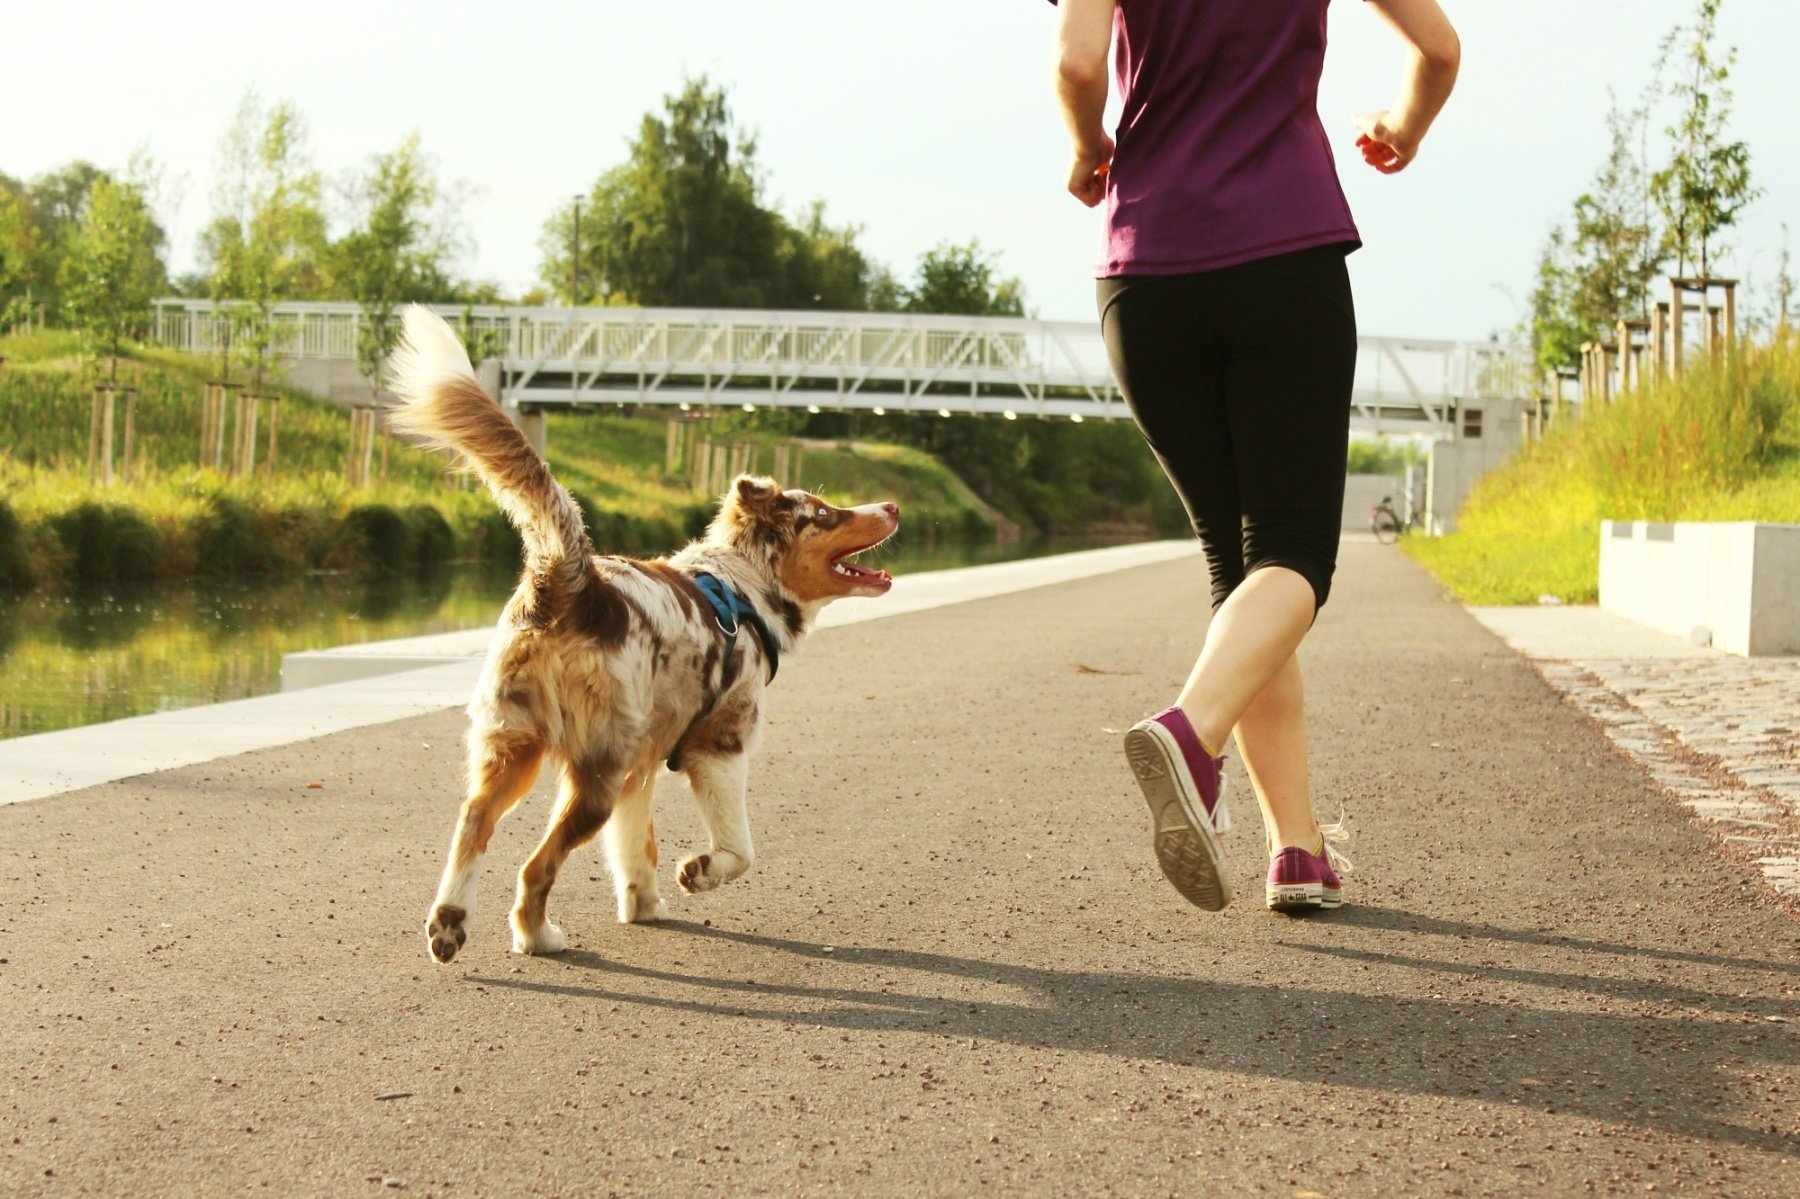 Comment réagir face à un chien lors d'un jogging ? – Athlétic